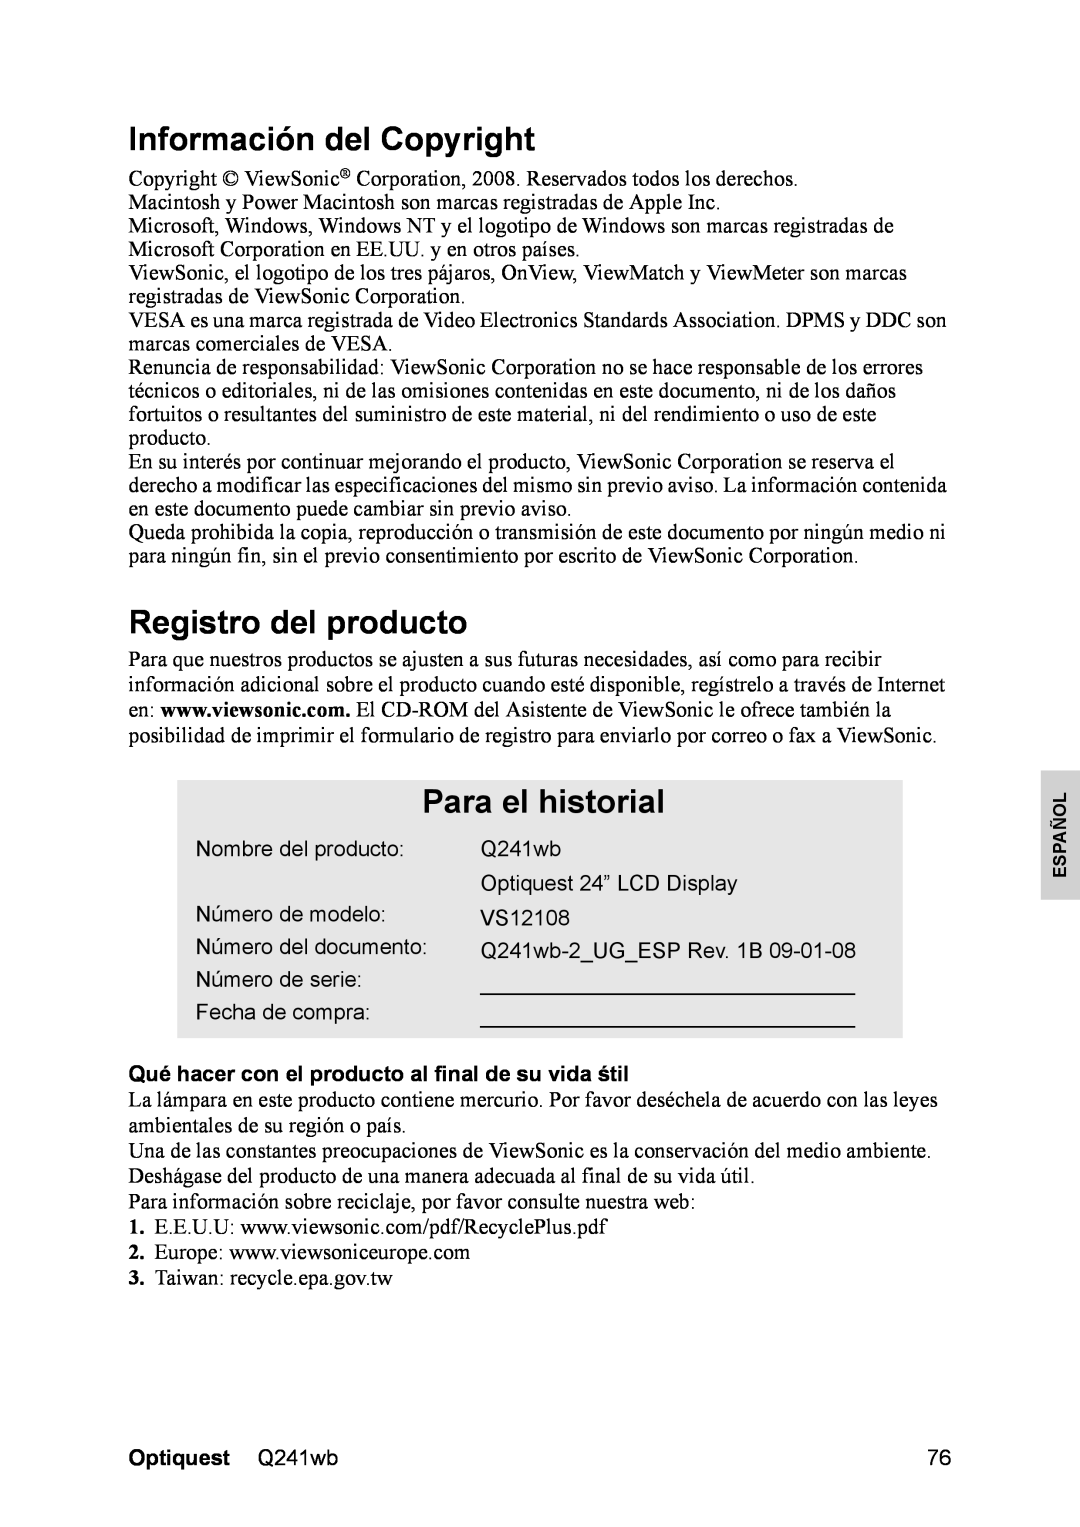 Optiquest VS12108 manual Información del Copyright, Registro del producto, Para el historial, Nombre del producto 